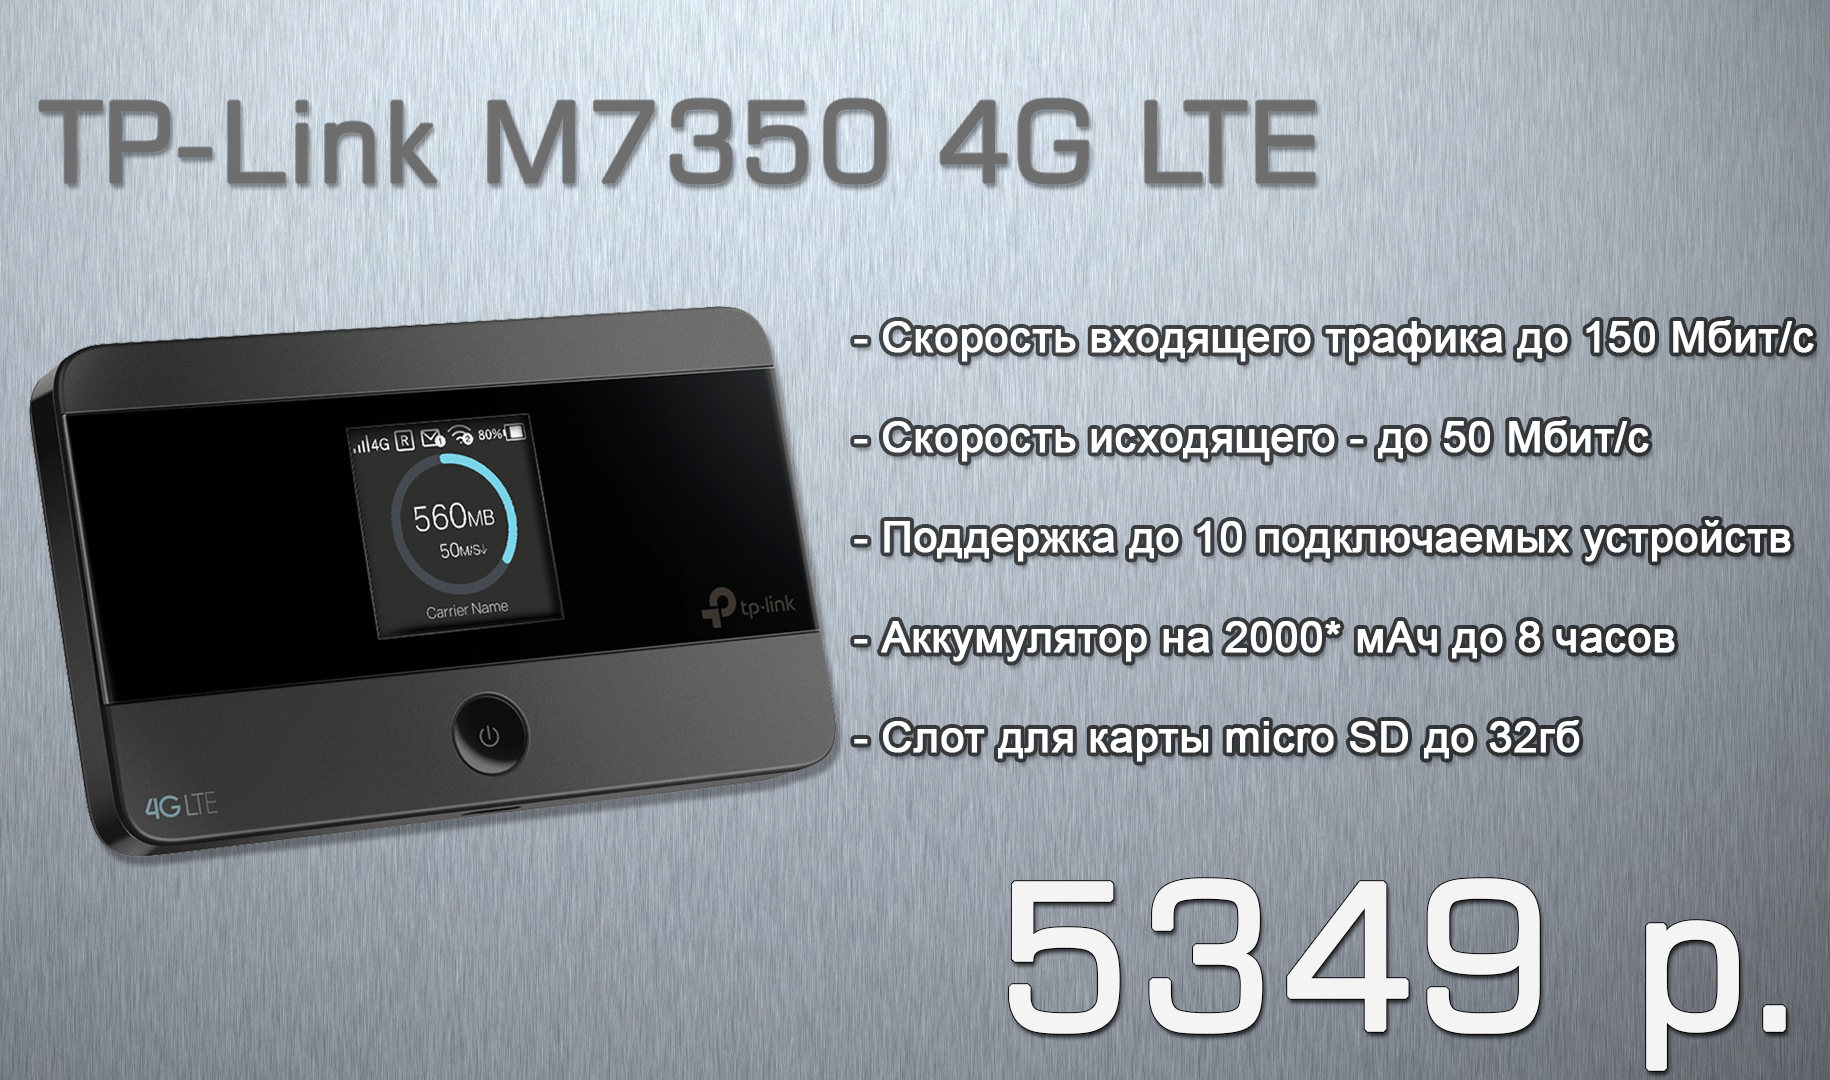 🌐   4G LTE  TP-LINK M7350